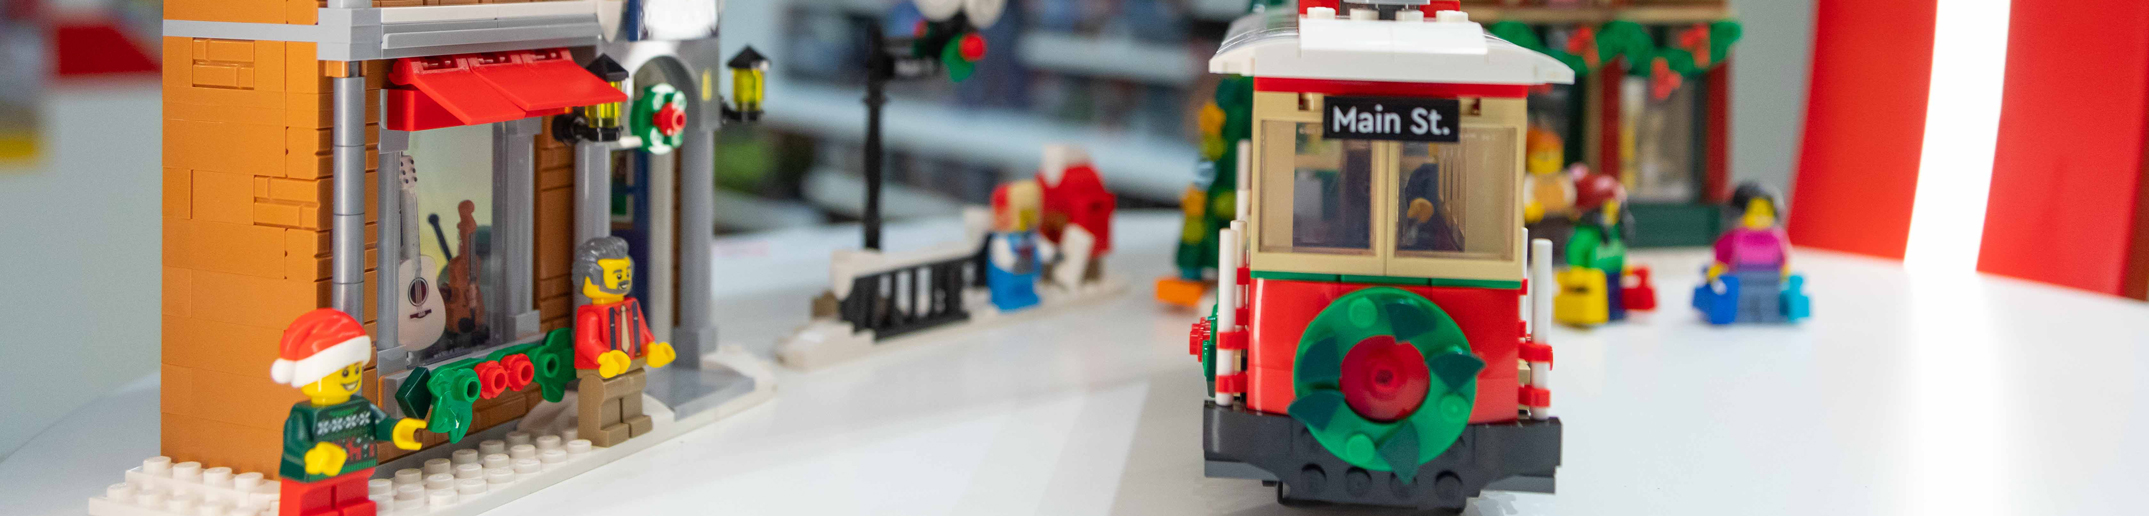 Ein Lego-Zug steht auf einem Tisch in einem Geschäft.